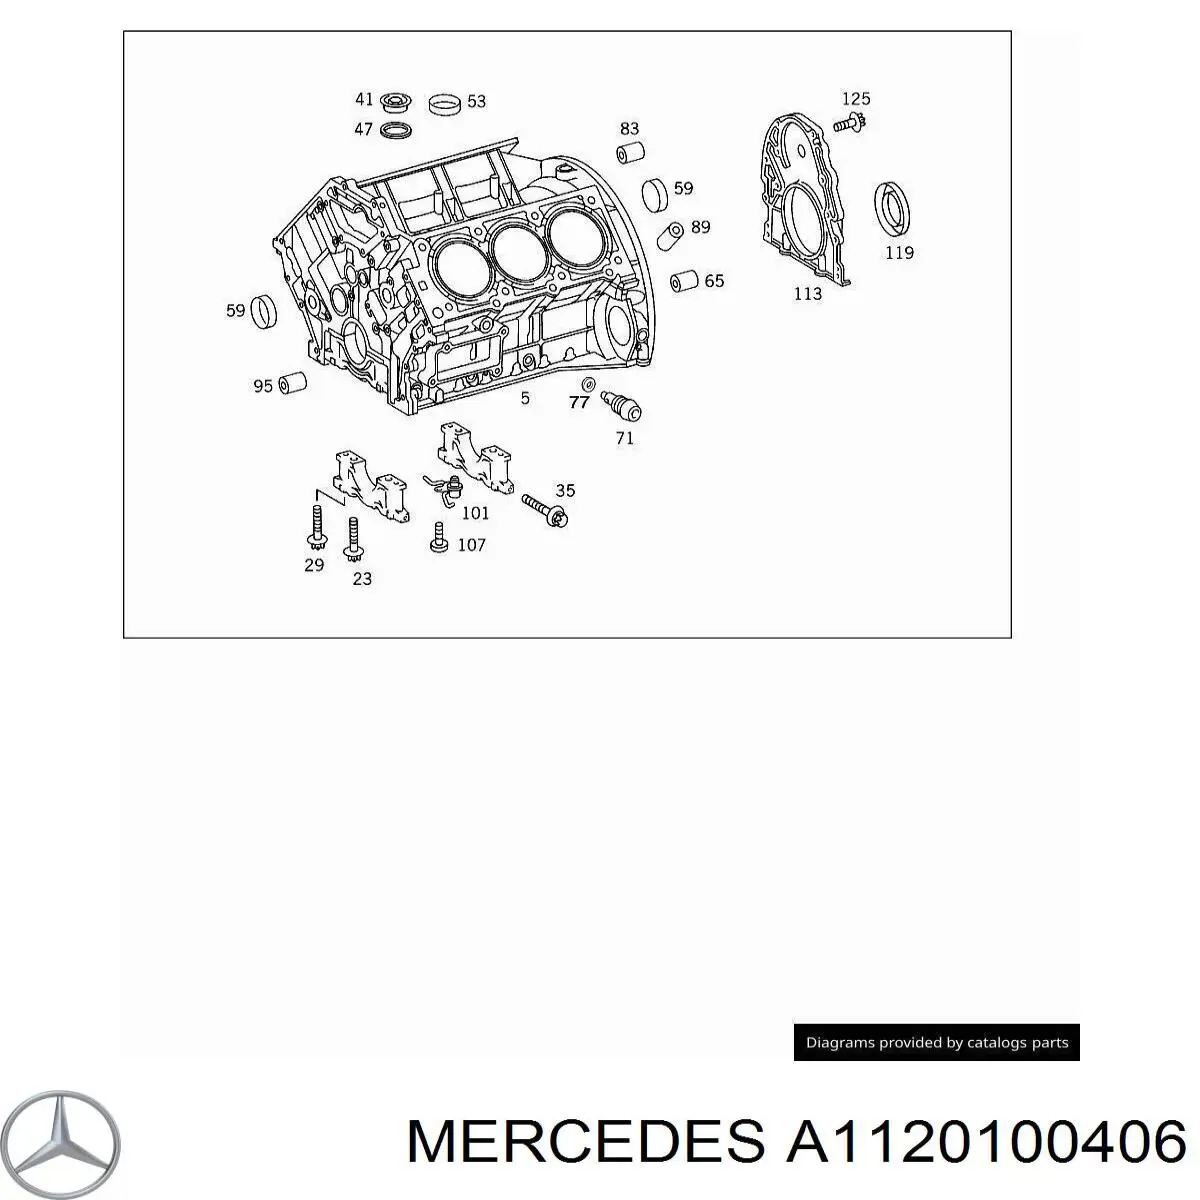 A1120100406 Mercedes bloque motor